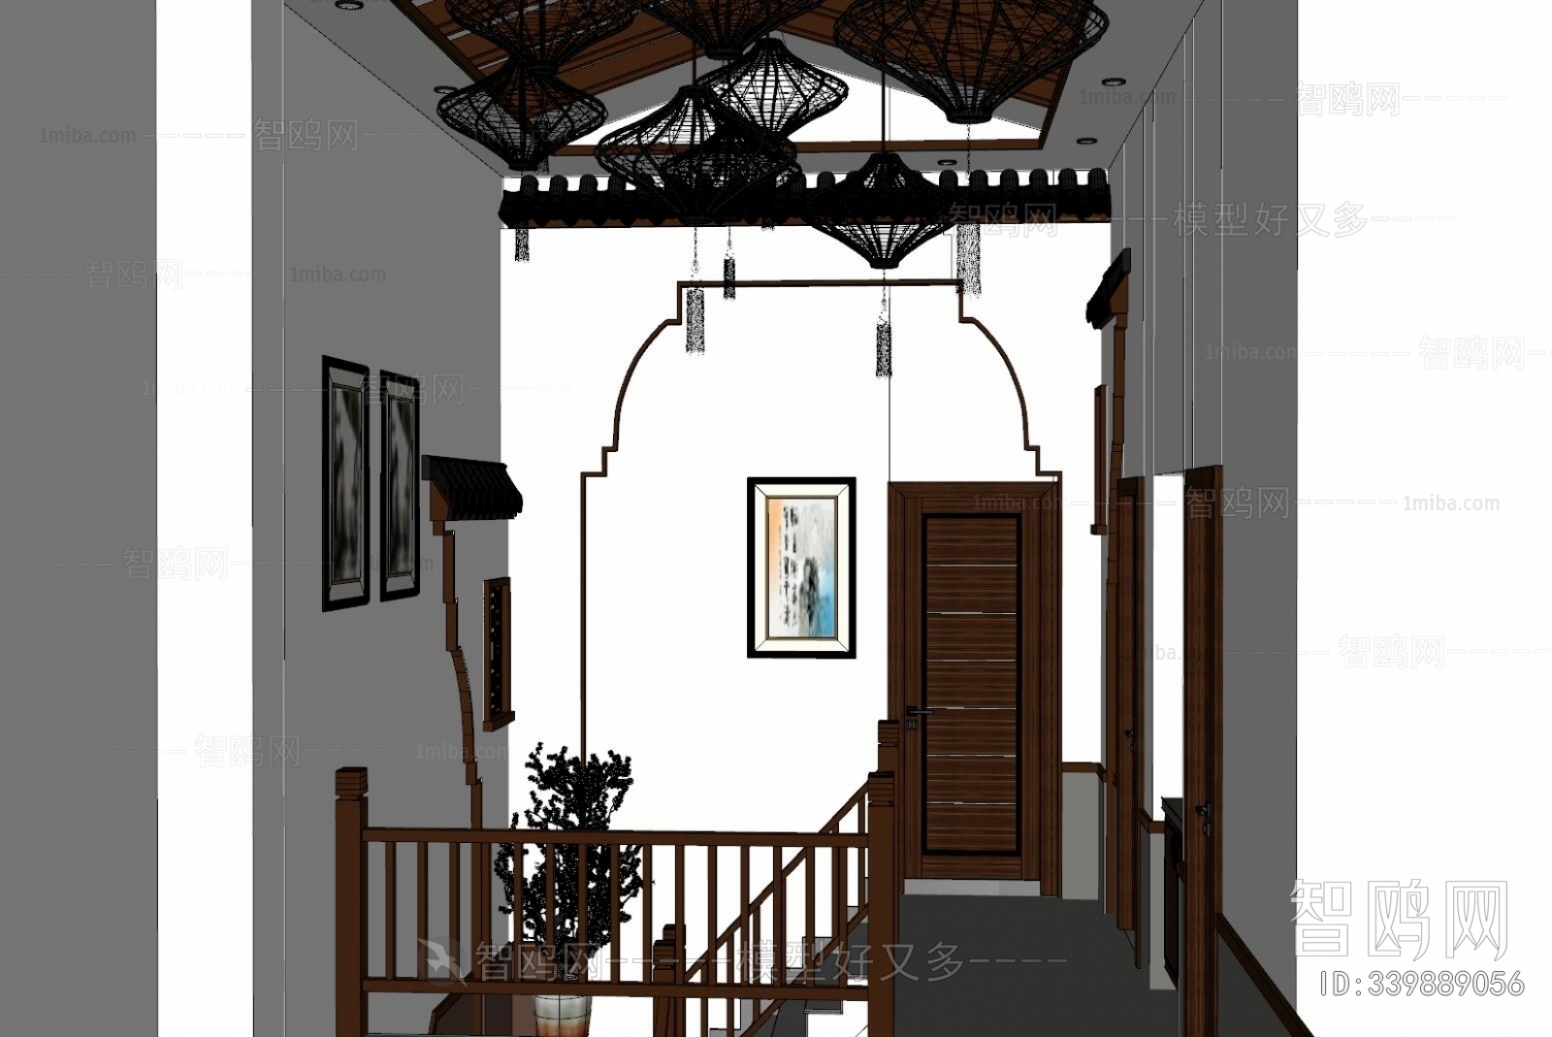 中式餐厅楼梯间